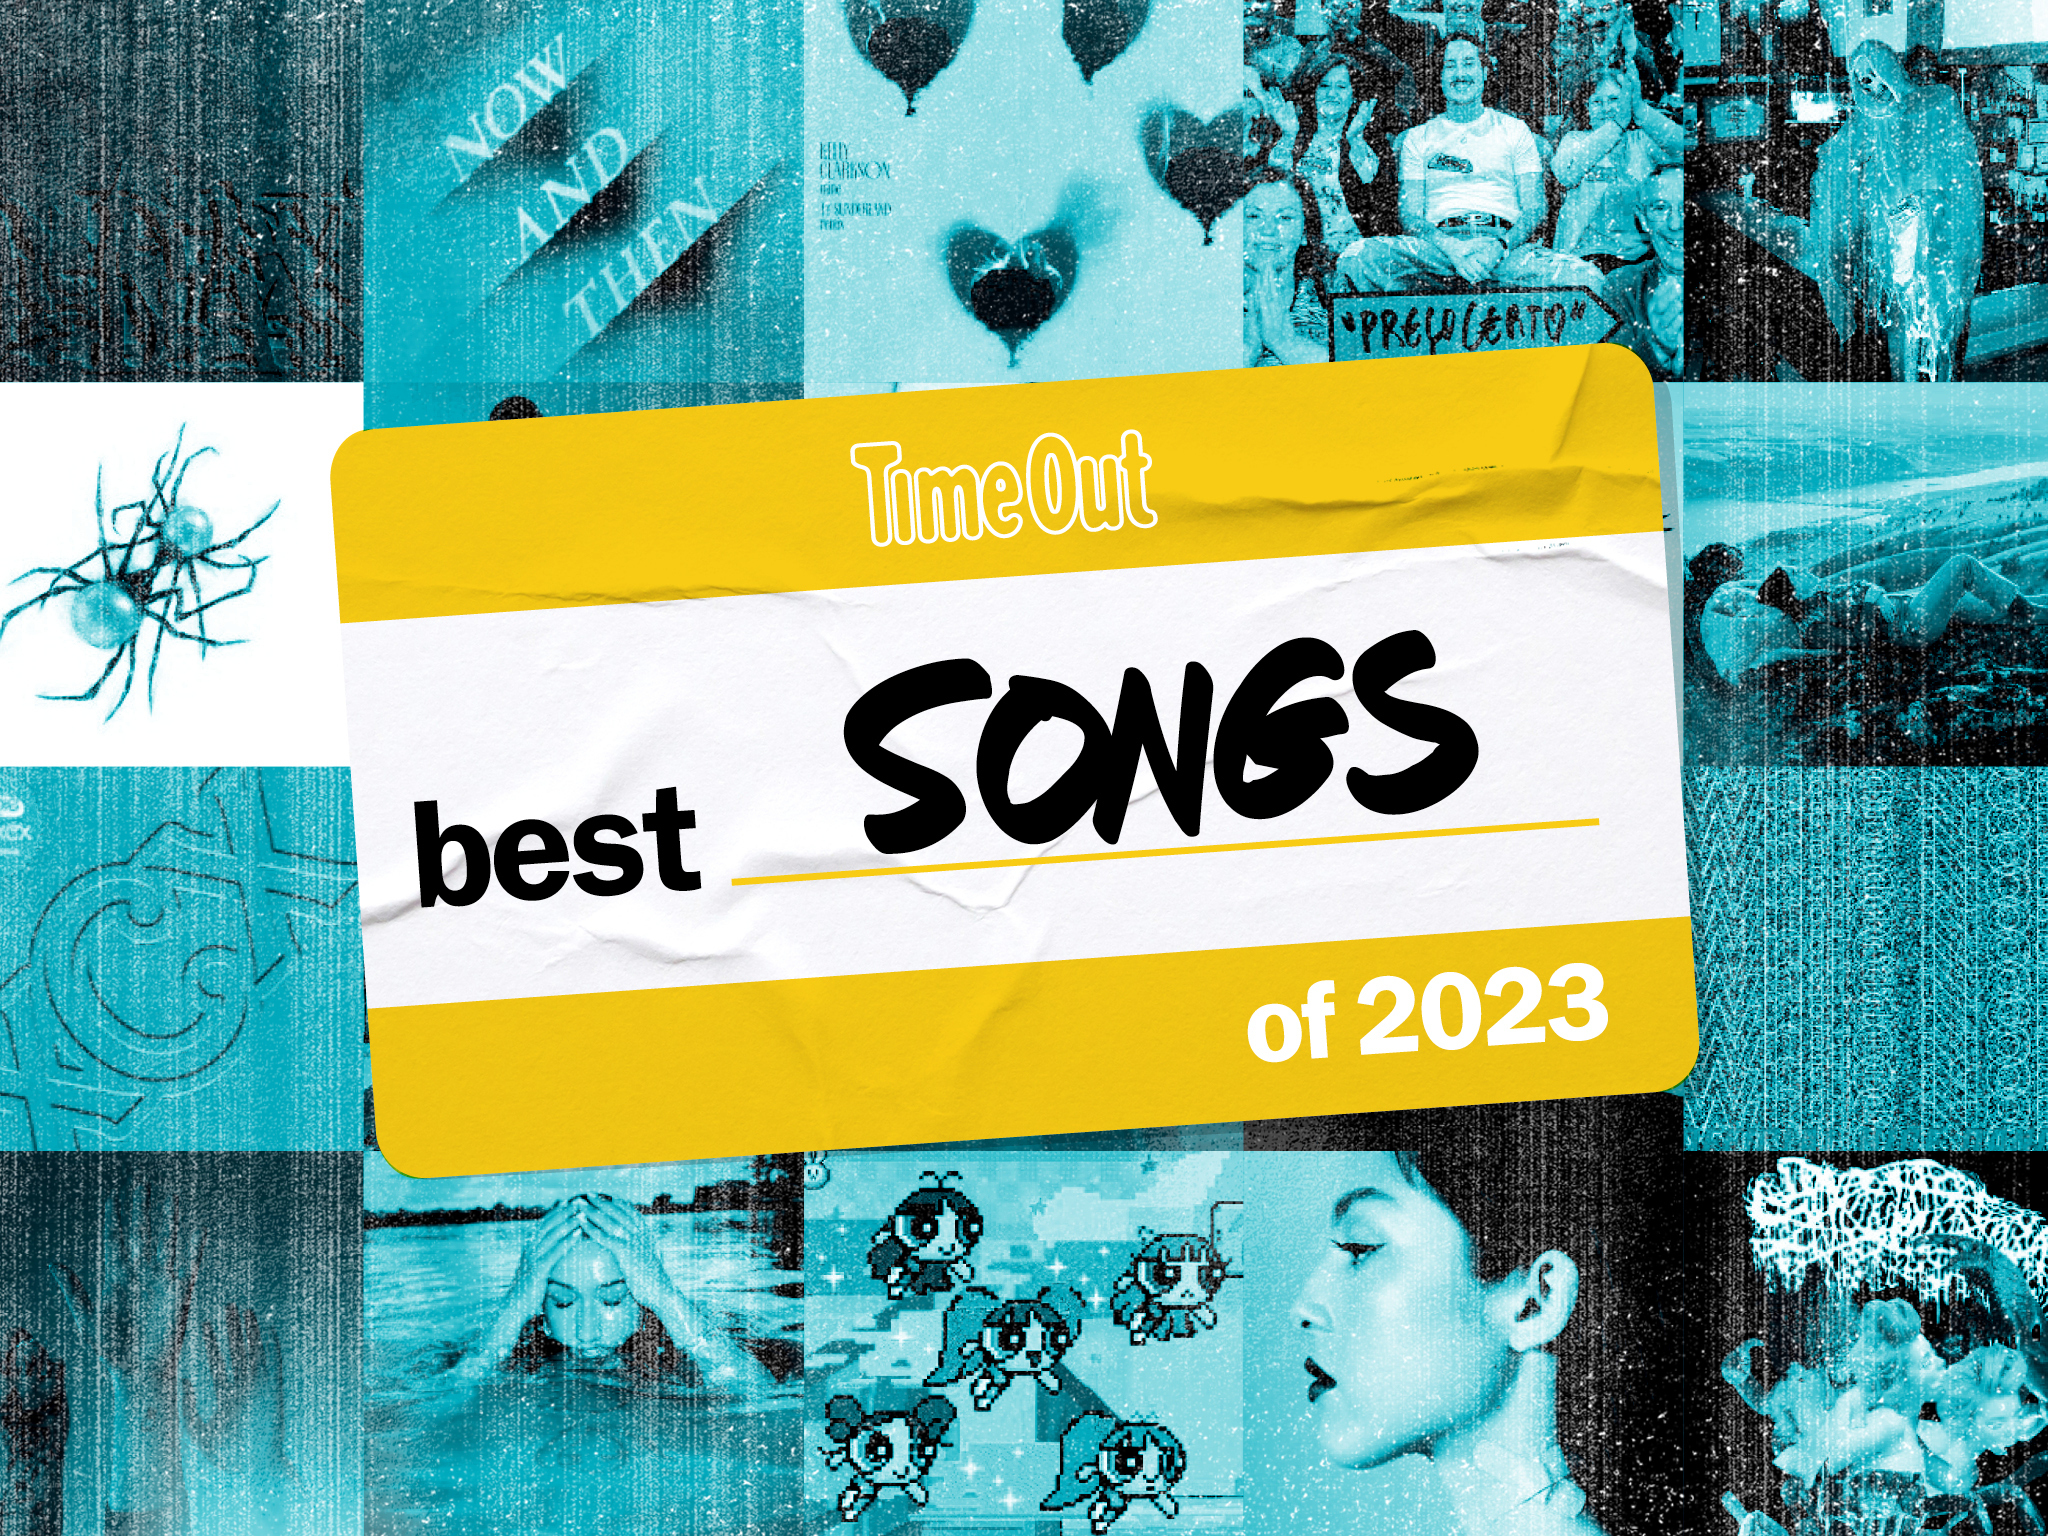 Best Songs of 2023